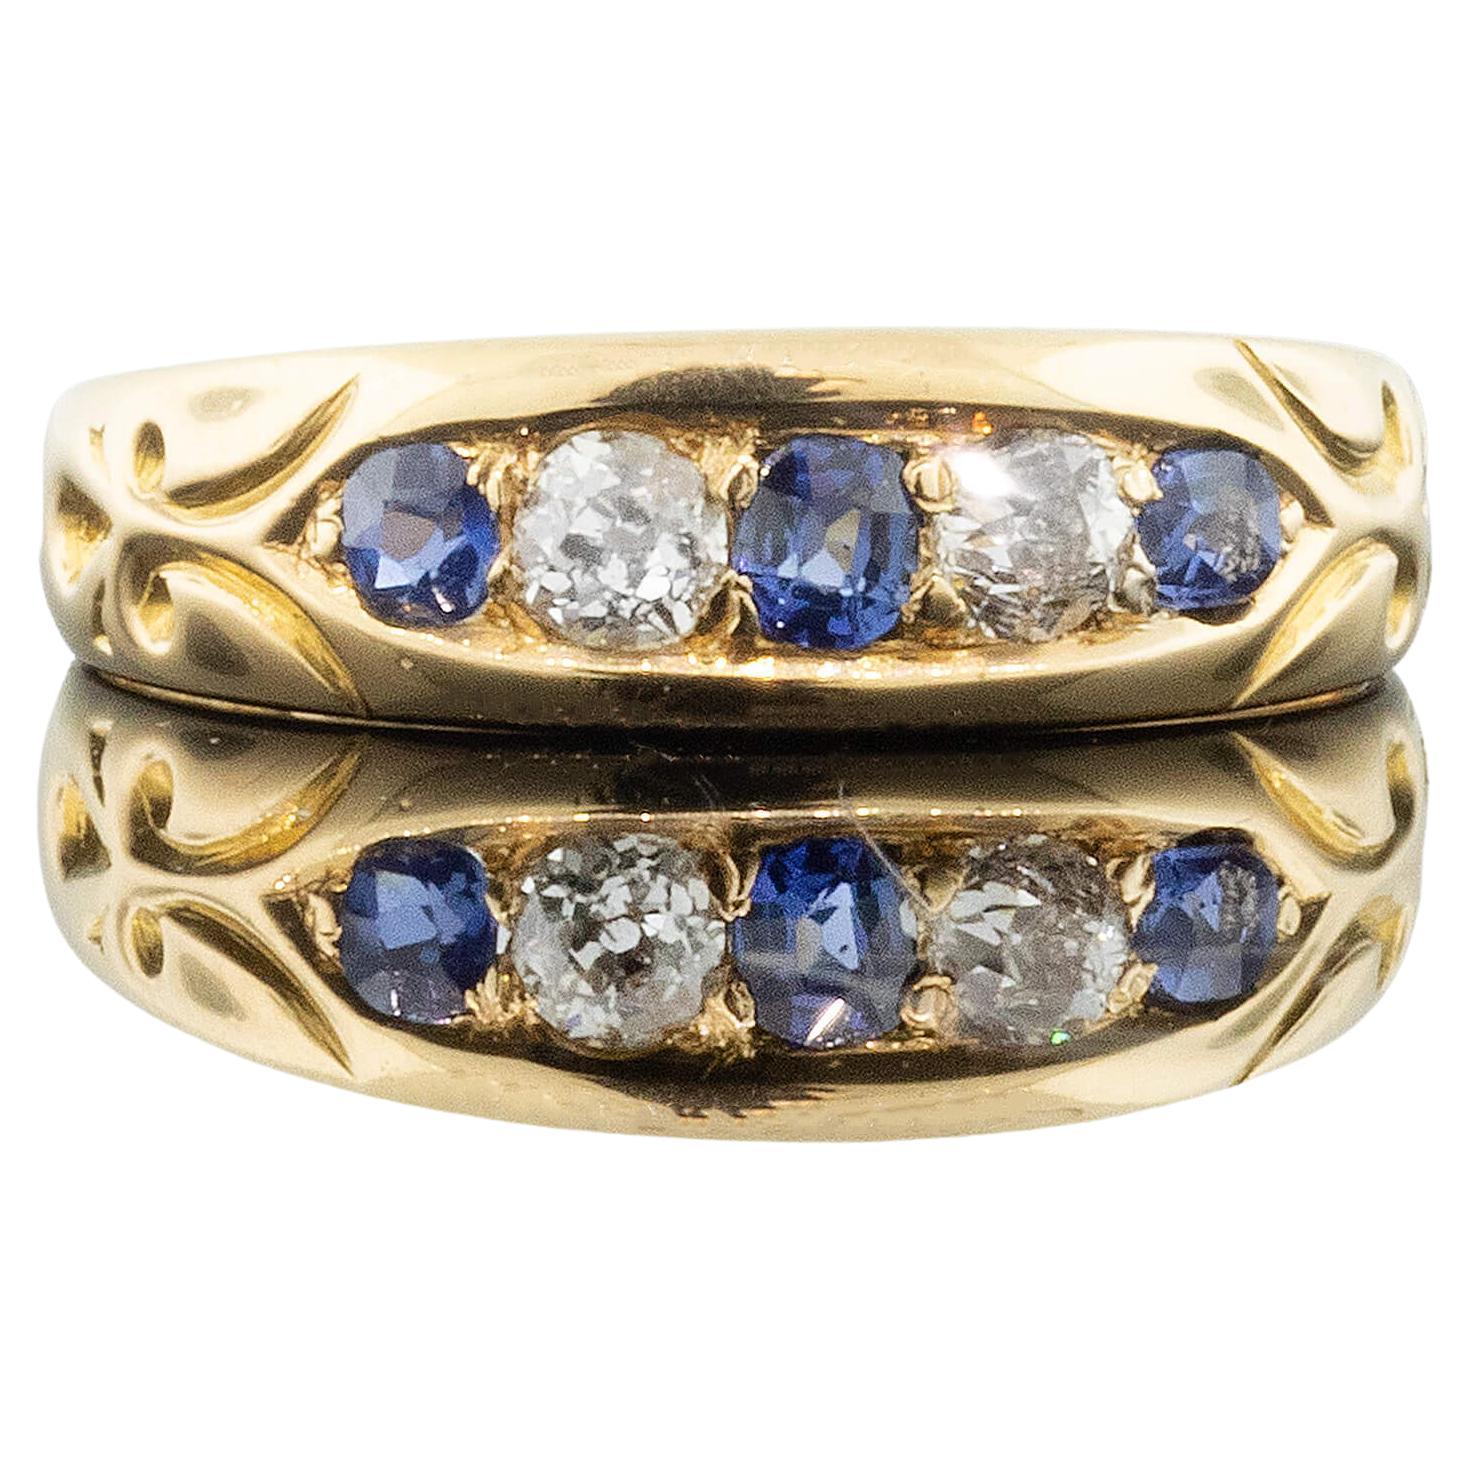 Victorian Sapphire & Diamond Ring - Hallmarked London 1891